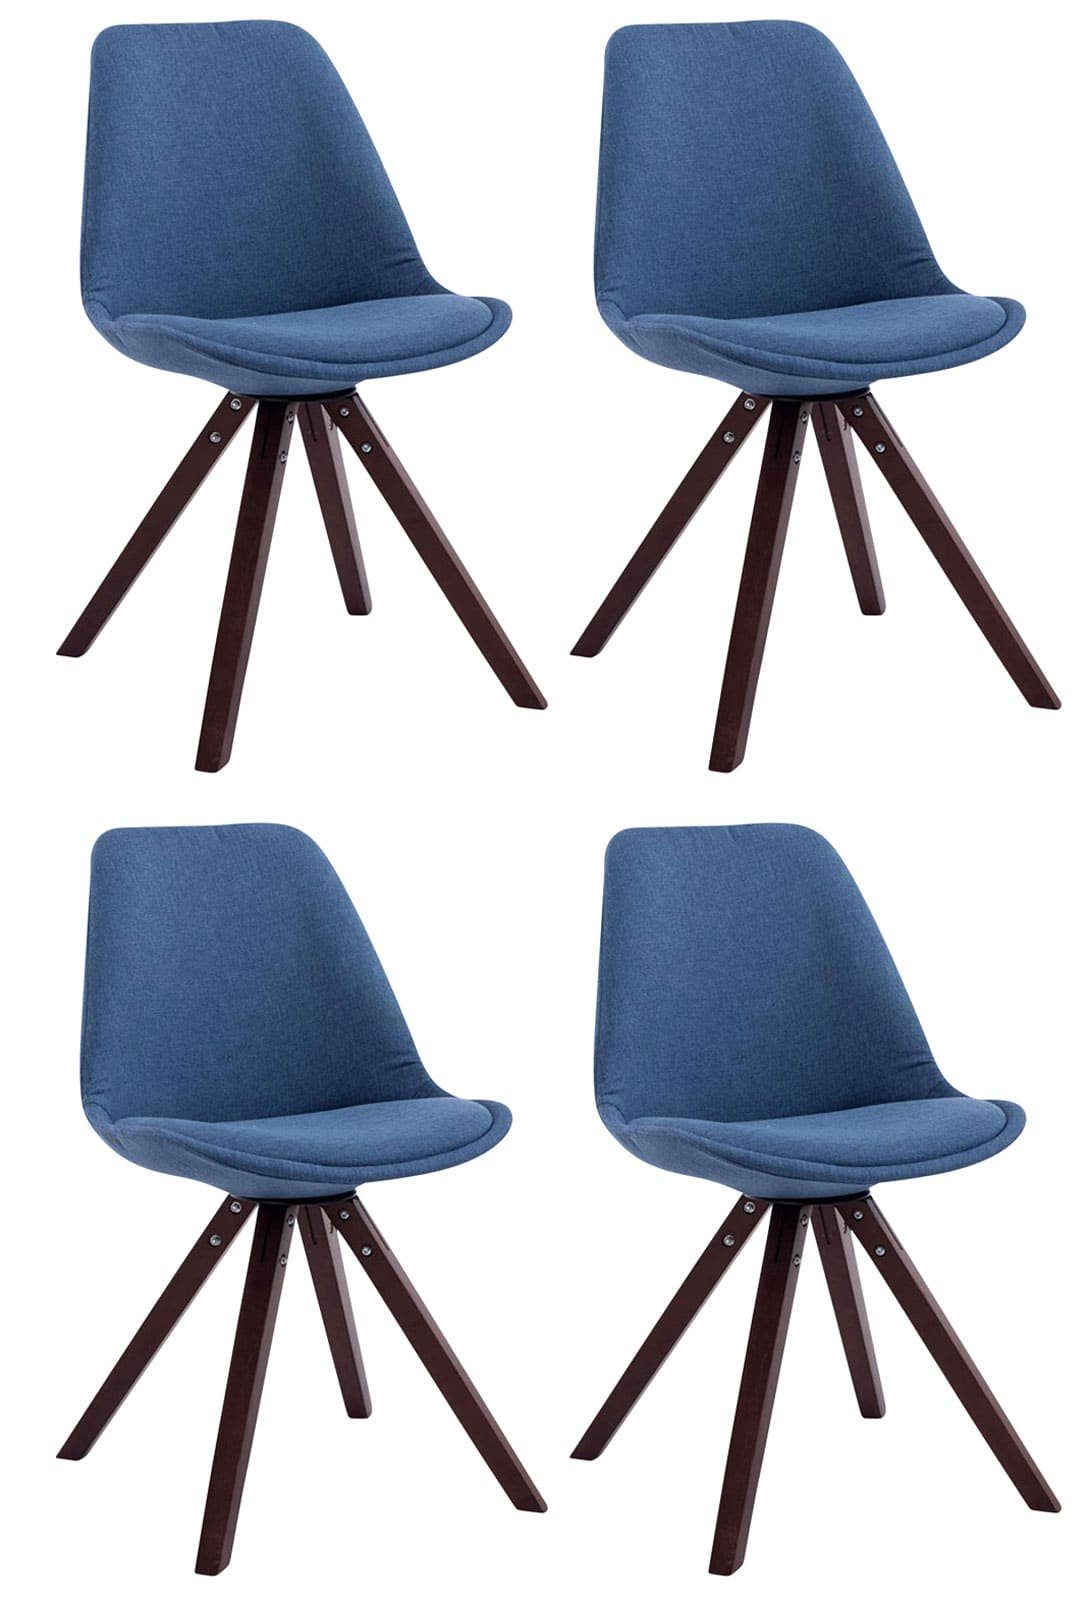 4 mit - (Küchenstuhl Konferenzstuhl Sitzfläche: Toulon gepolsterter Besucherstuhl - Buchenholz Gestell: Esszimmerstuhl TPFLiving Sitzfläche Cappuccino Stoff Wohnzimmerstuhl, St), - blau - hochwertig